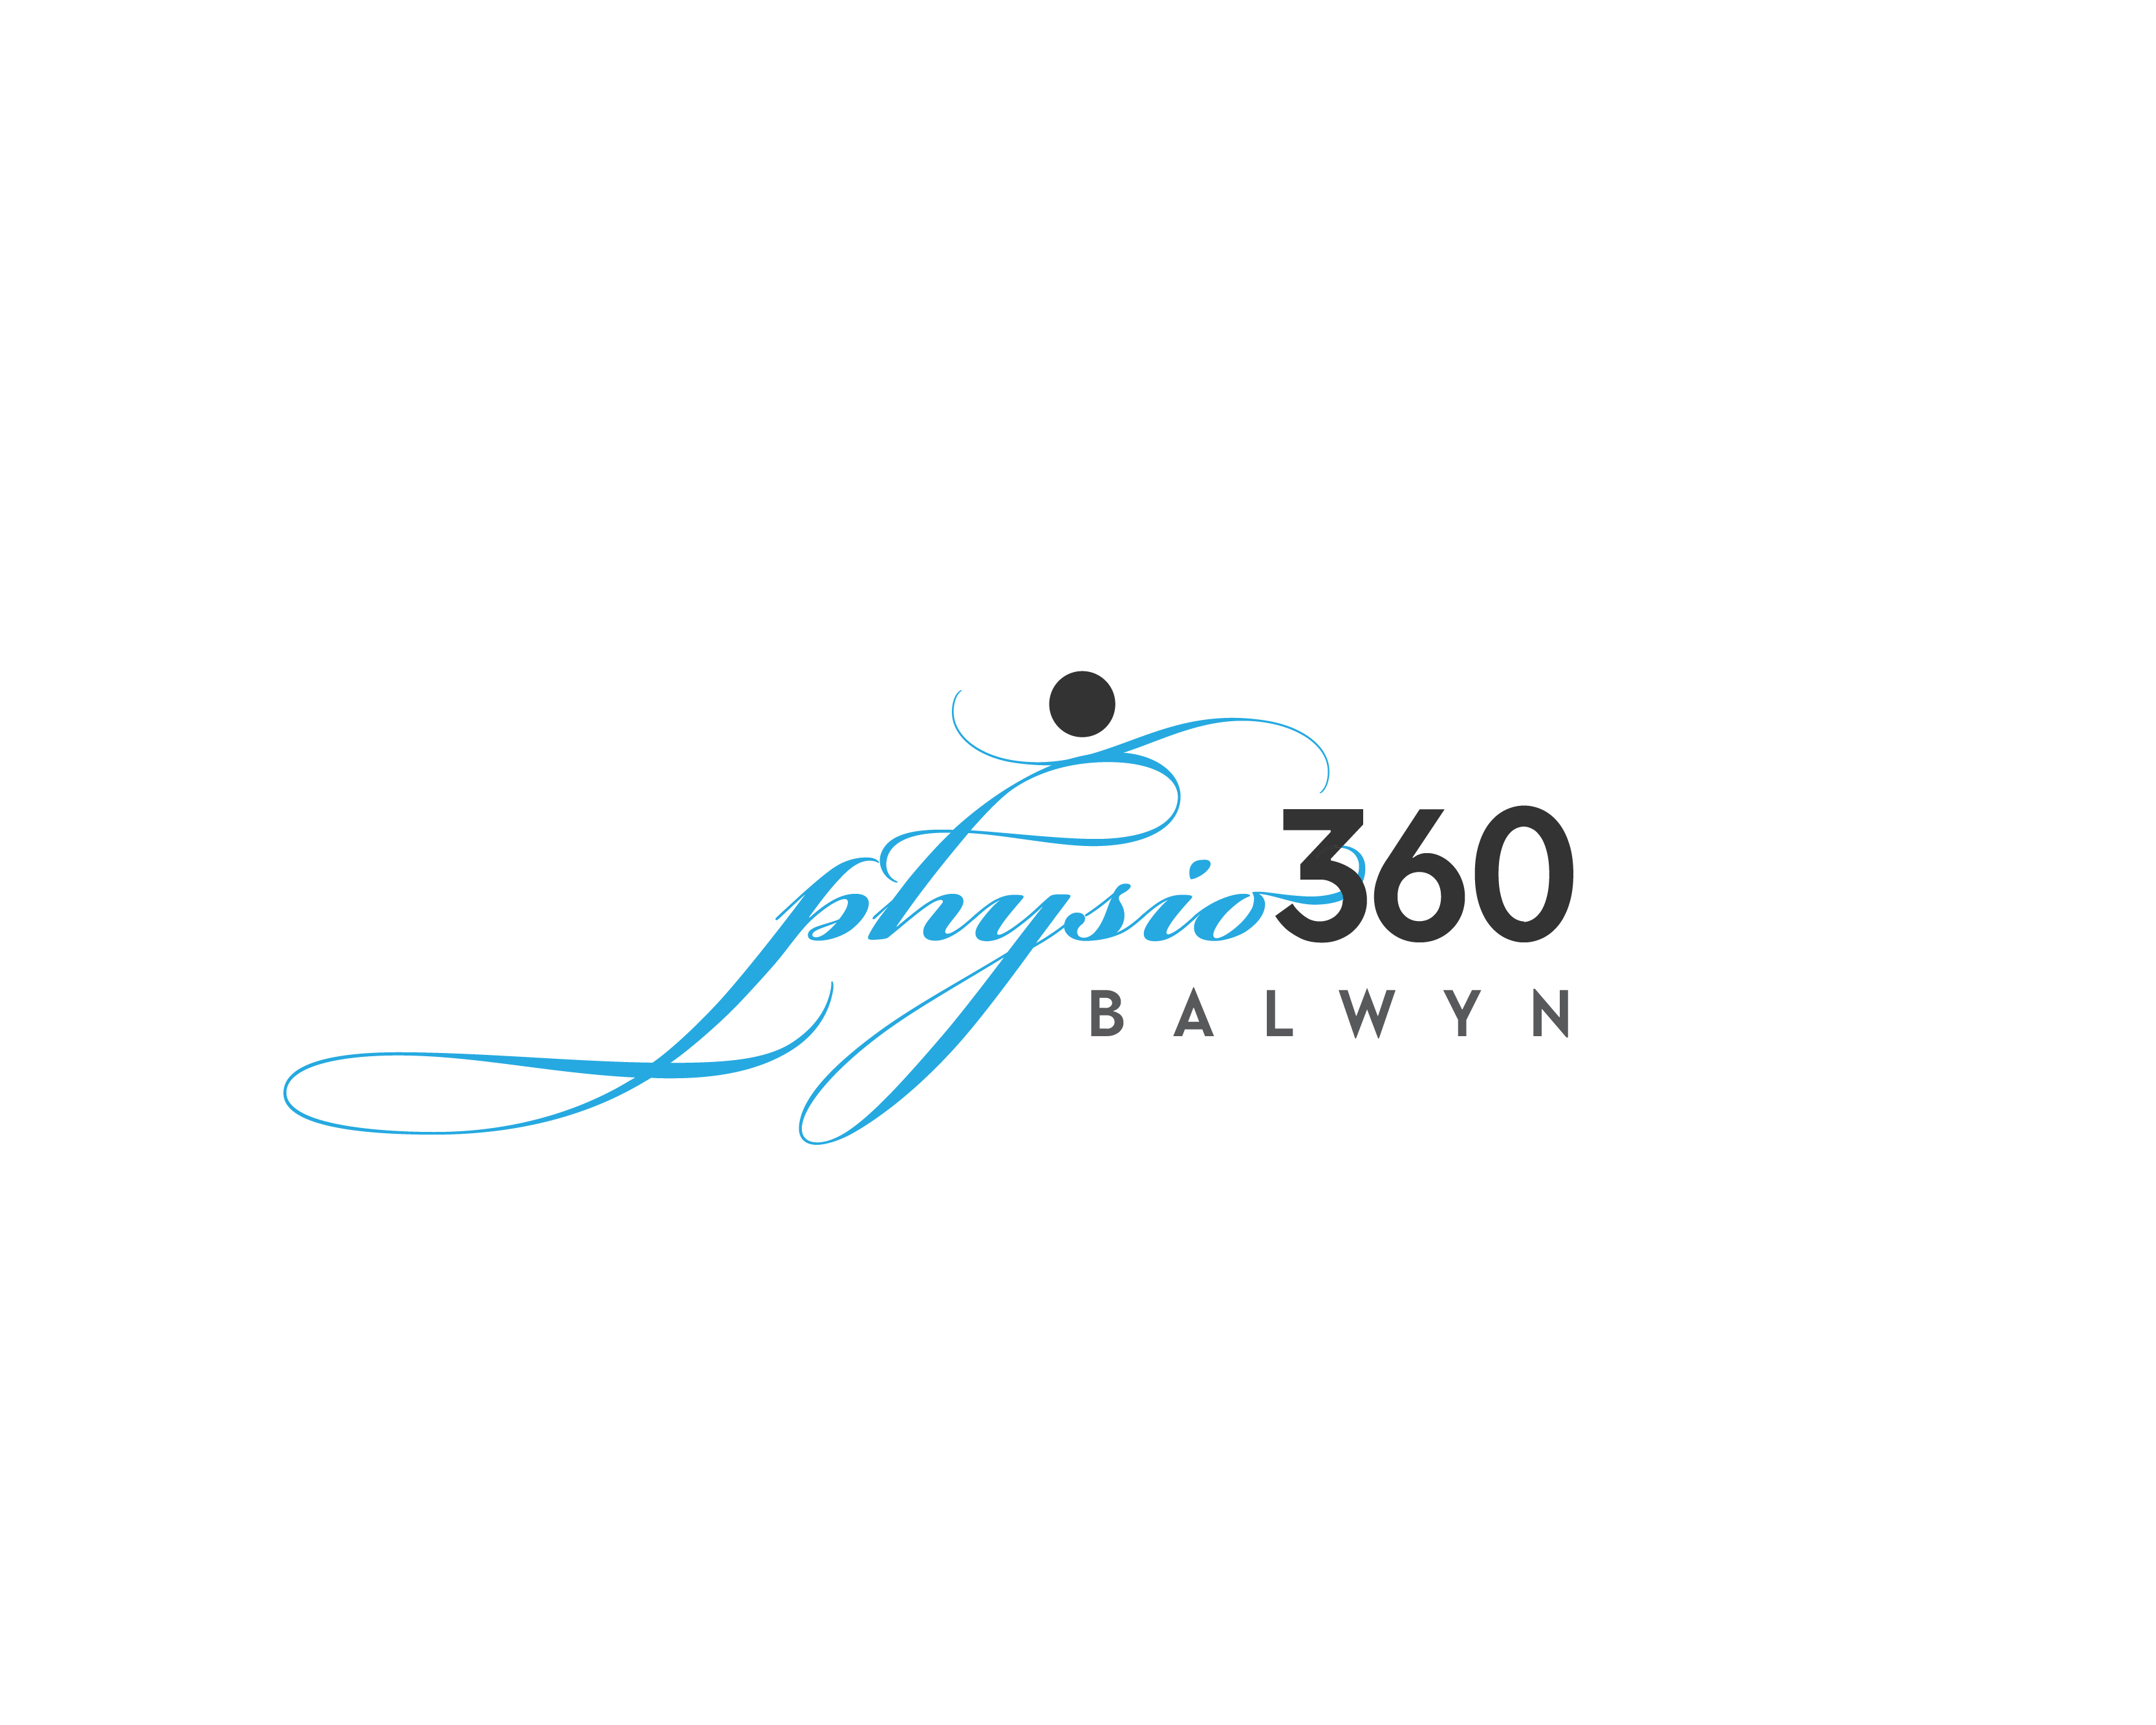 Logo Design entry 2385821 submitted by JOYMAHADIK to the Logo Design for PHYSIO 360 BALWYN run by shar108